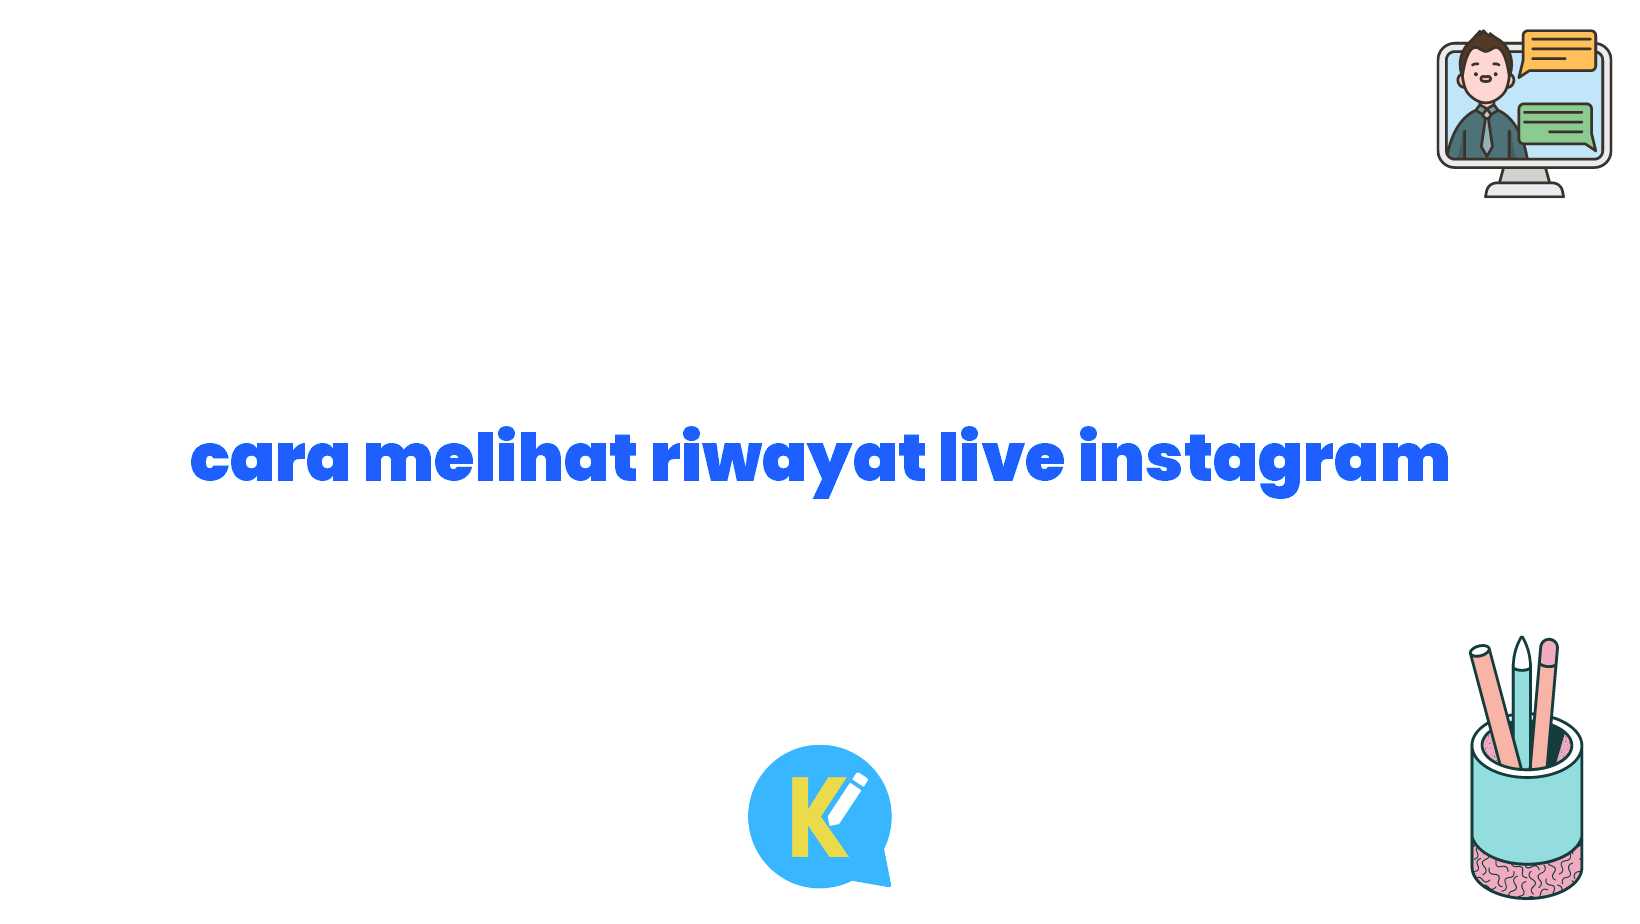 cara melihat riwayat live instagram